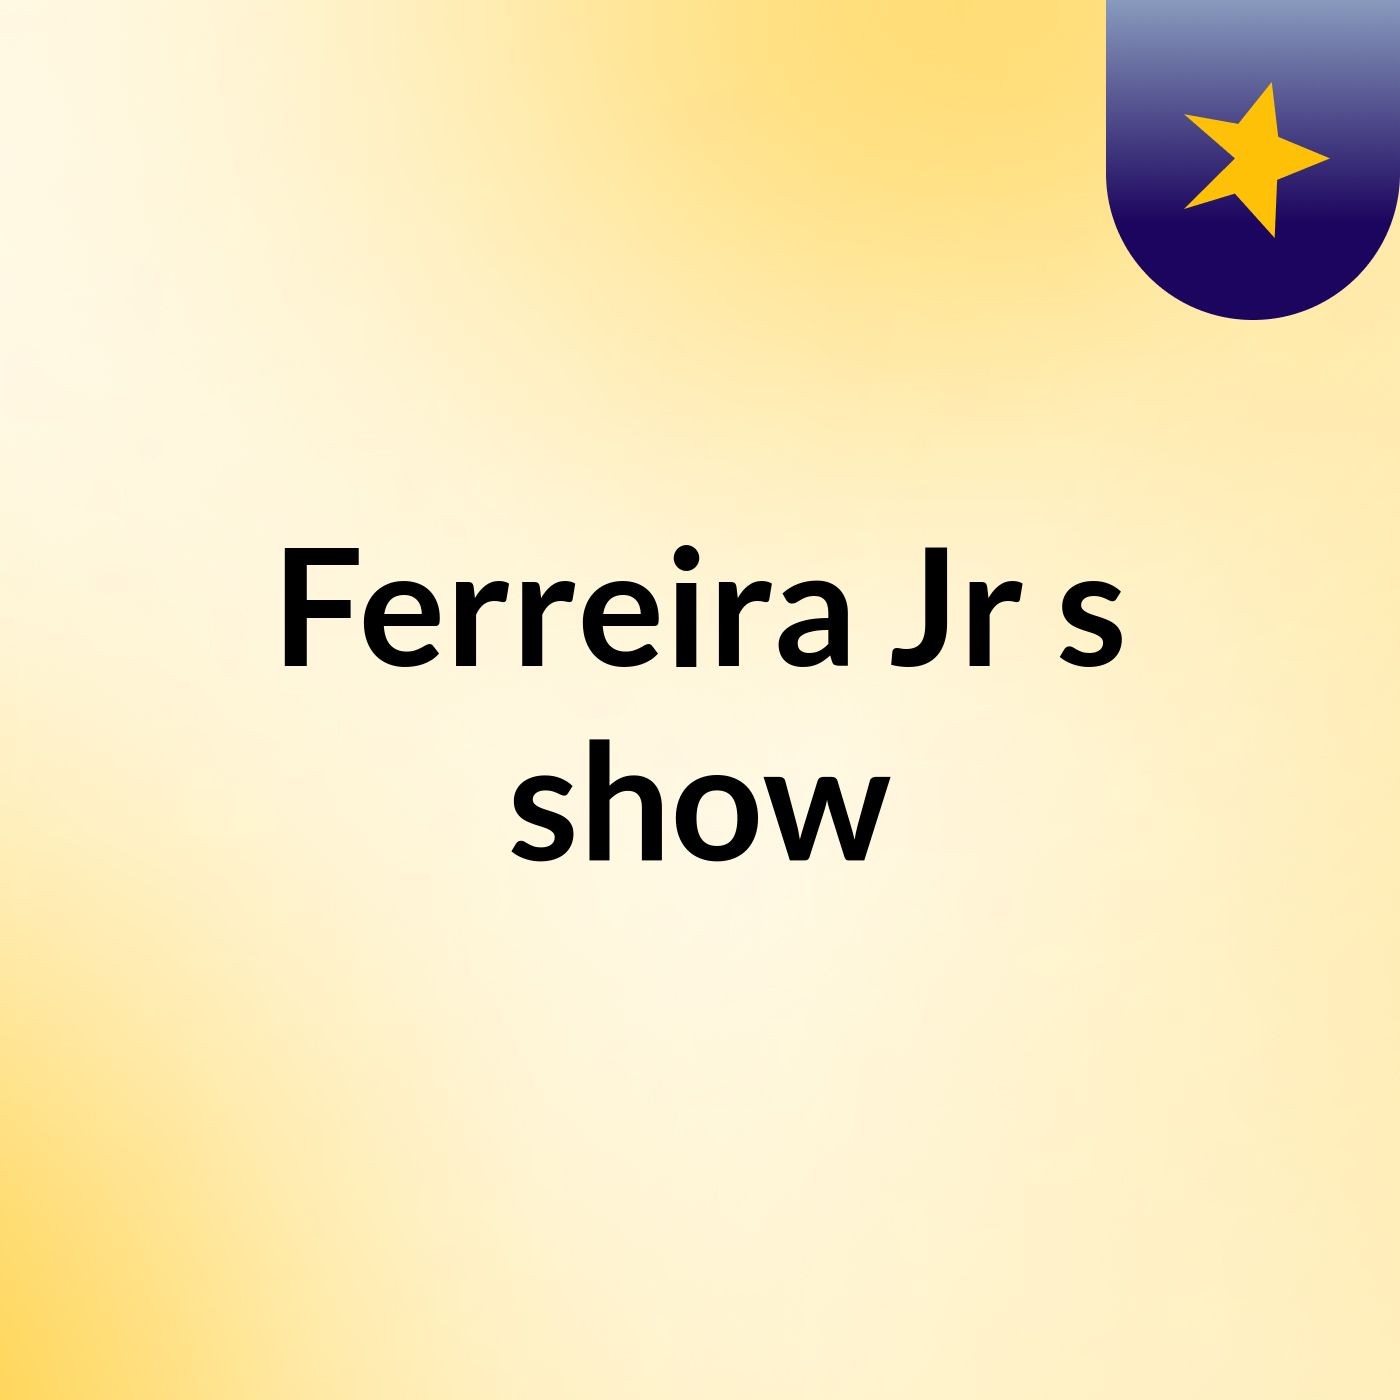 Ferreira Jr's show